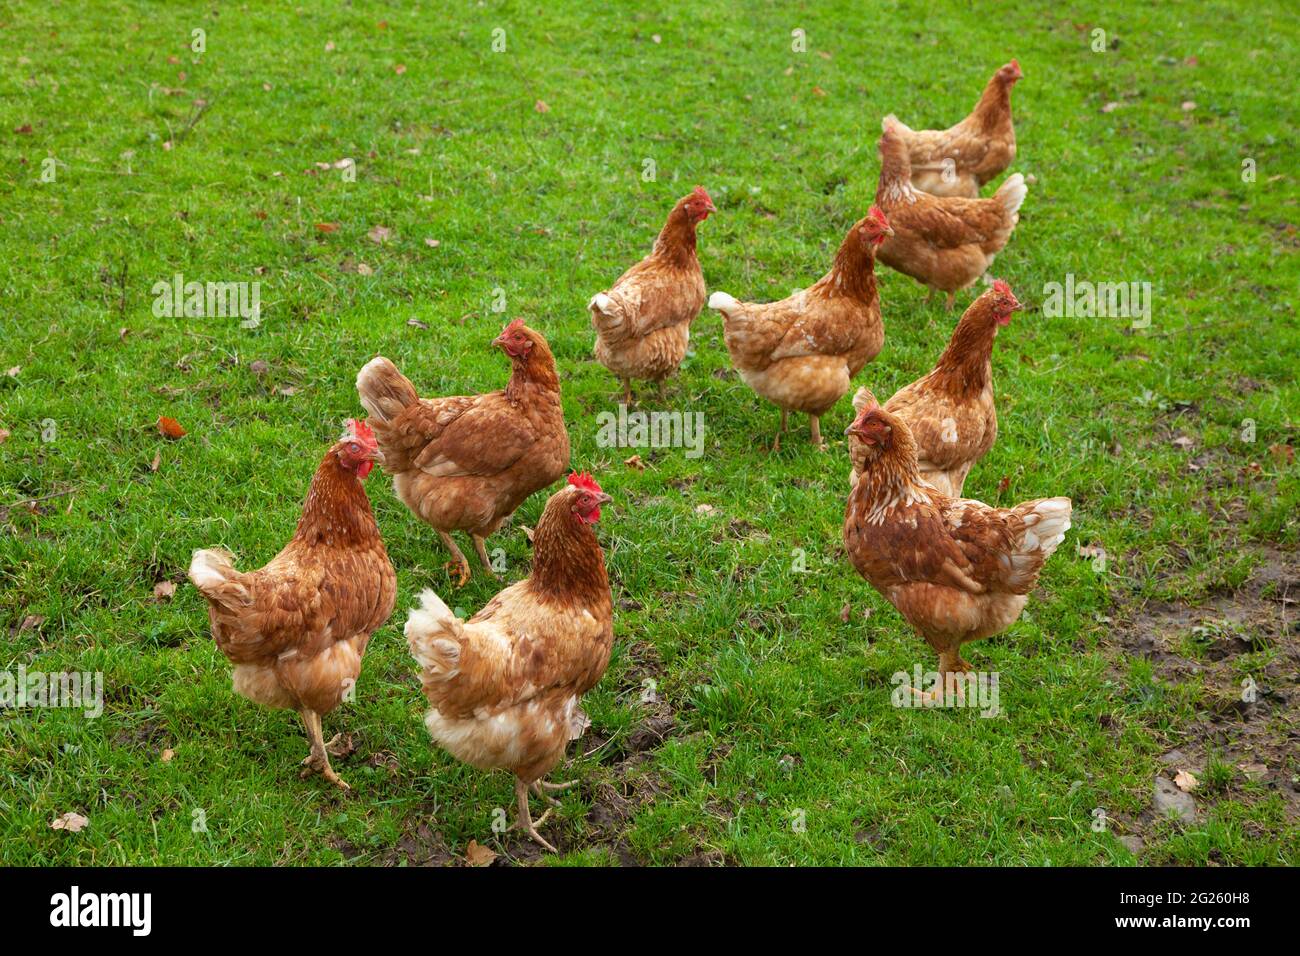 Un groupe de poulets debout sur l'herbe verte luxuriante Banque D'Images